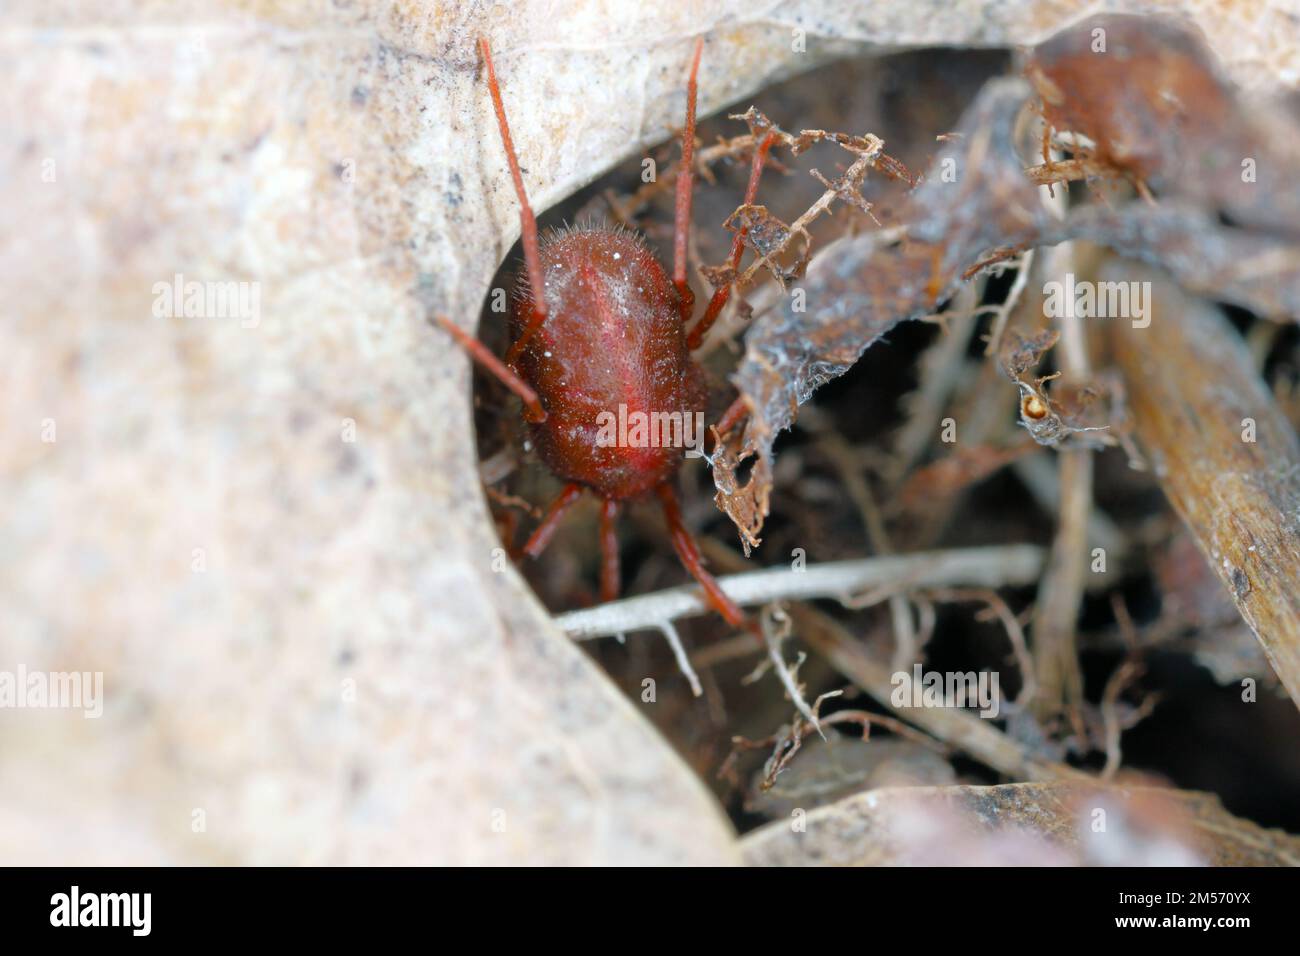 Erythraeus sp., famiglia Erythraeidae, acari predatori in cerca di preda nella lettiera forestale. Foto Stock